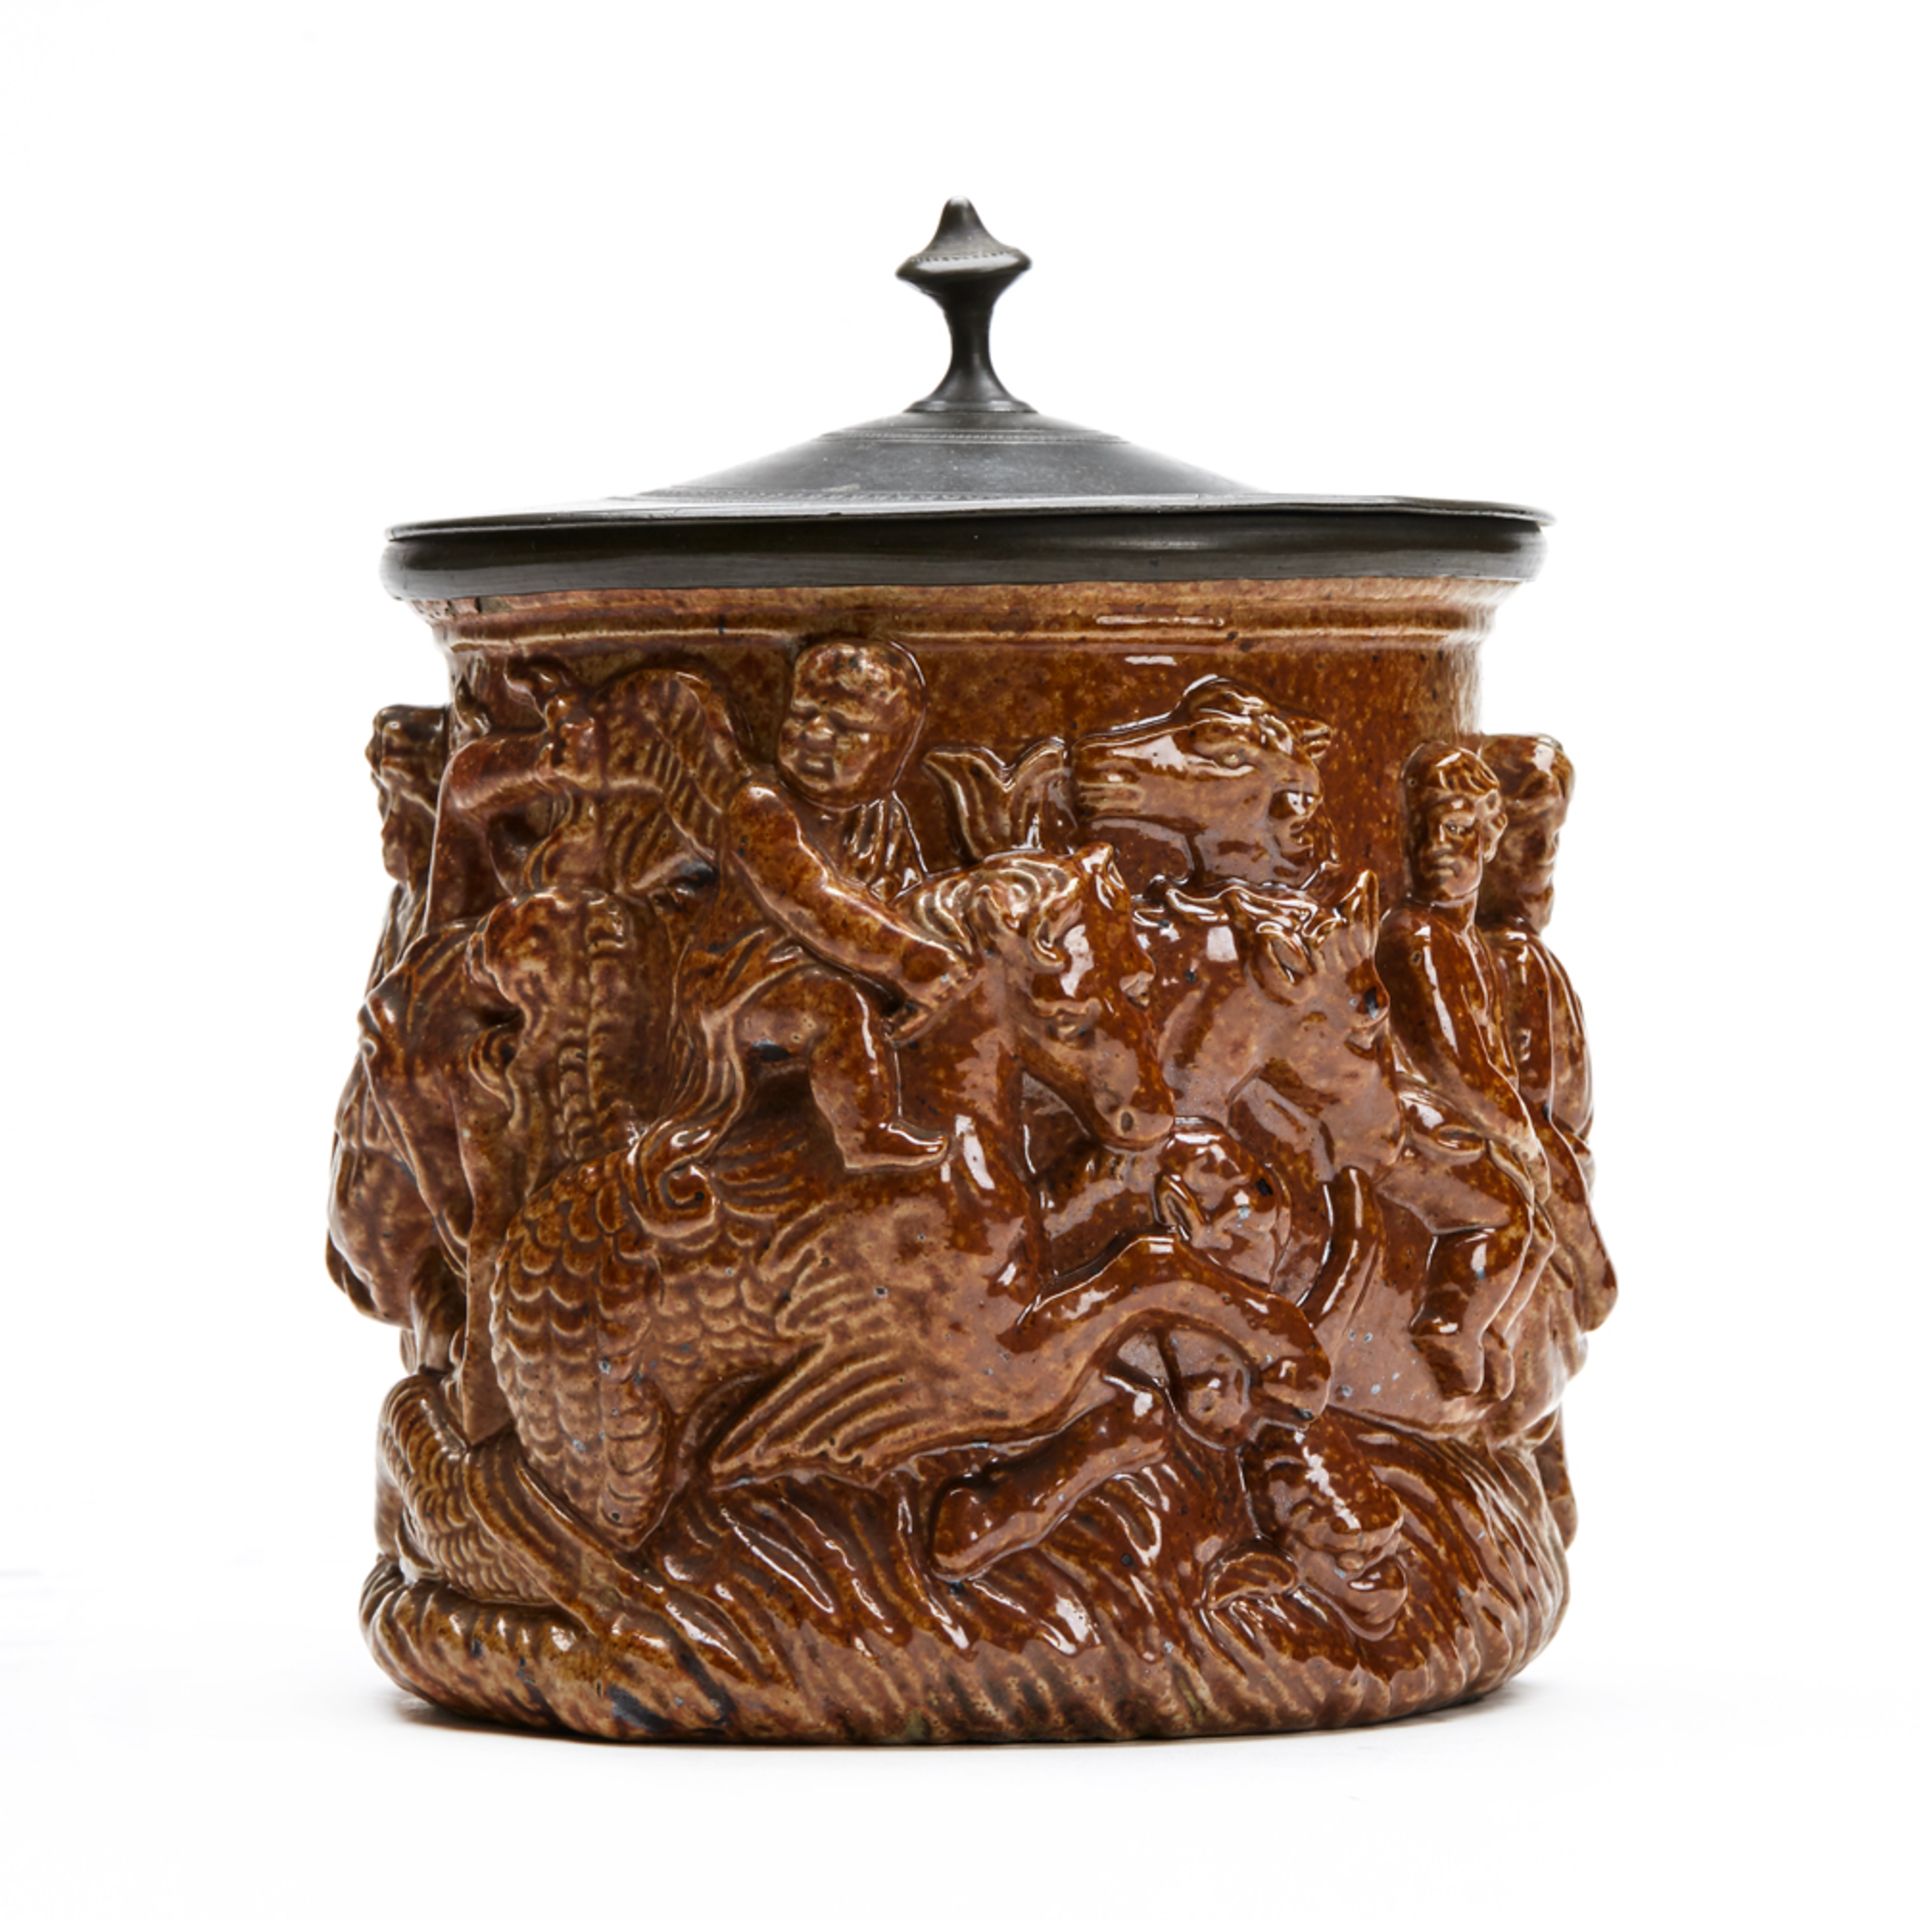 Salt Glazed Figural Pewter Mounted Tobacco Jar C.1830 - Image 4 of 9